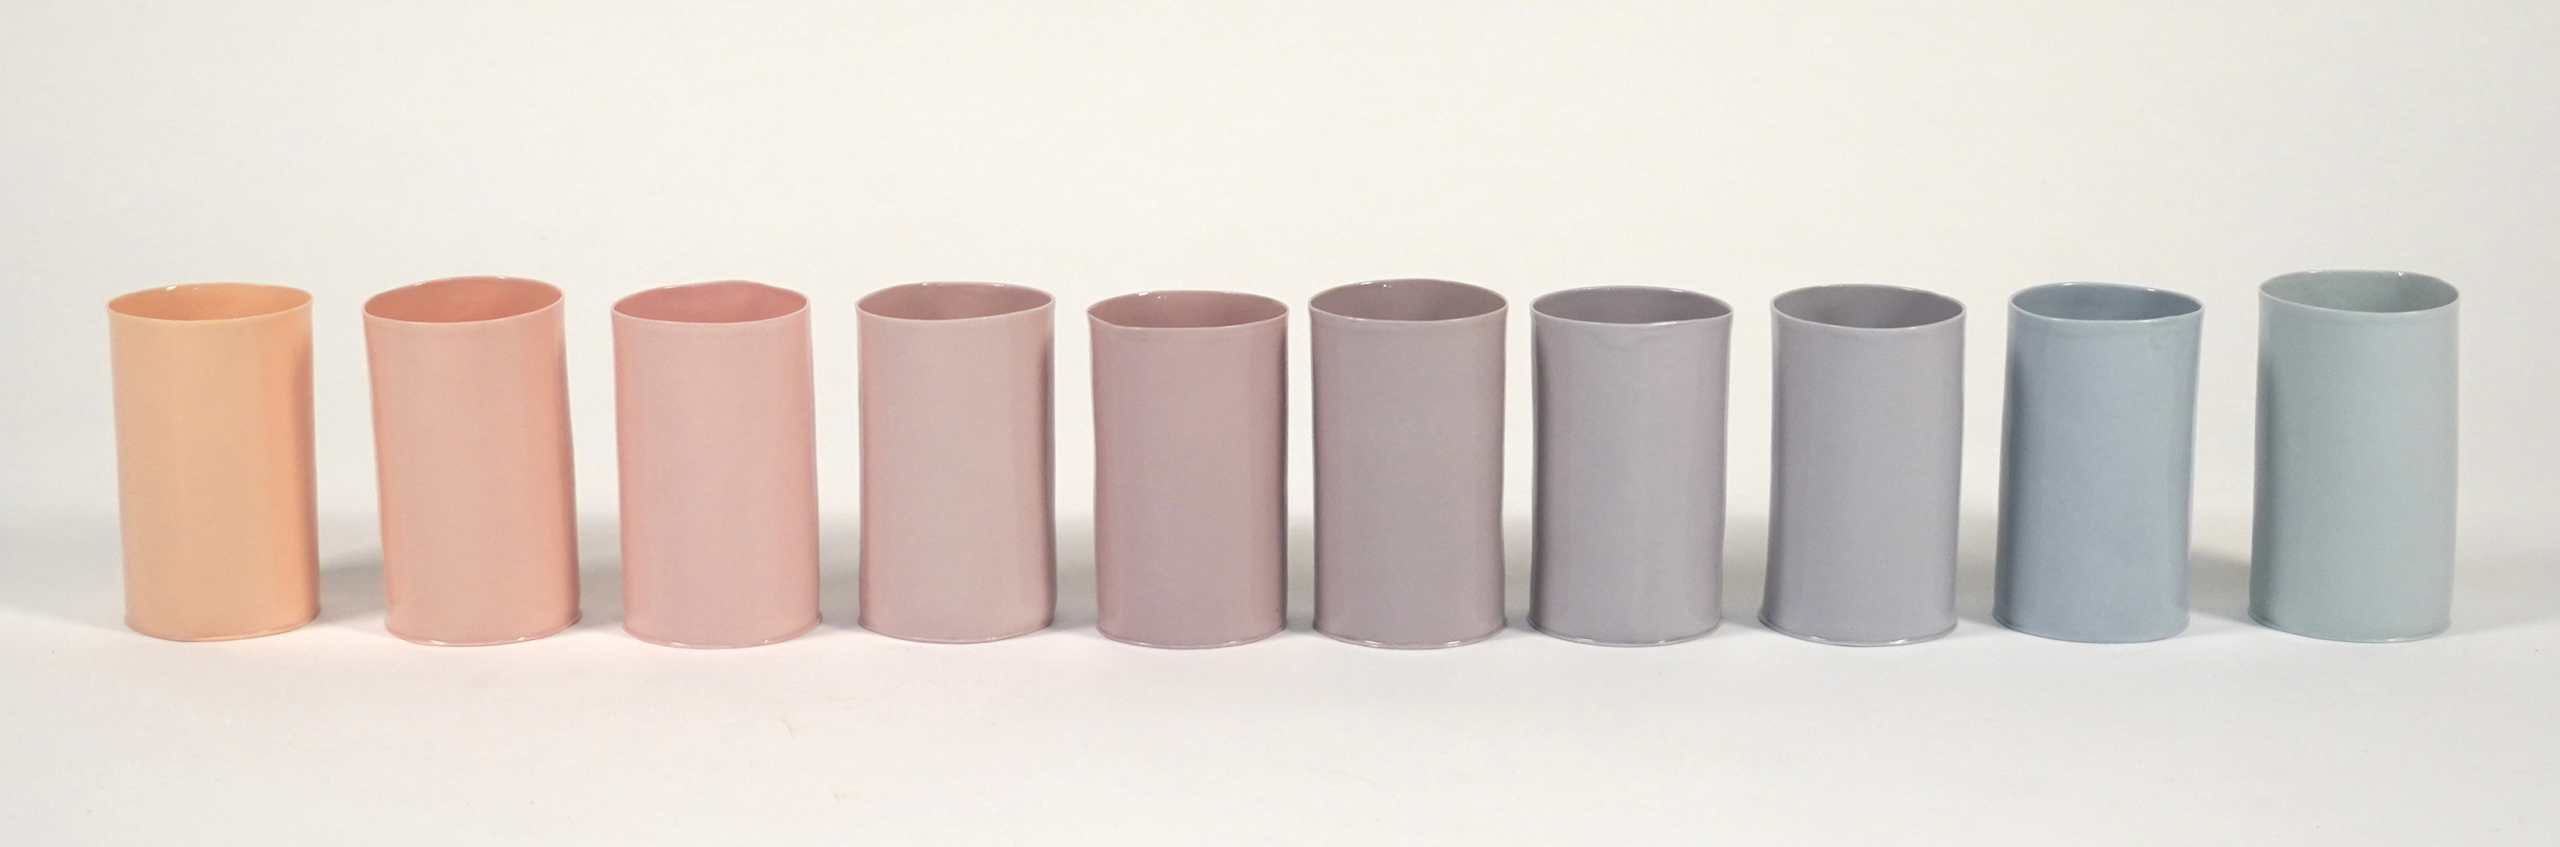 Andrés Enríquez - Color play porcelain shapes